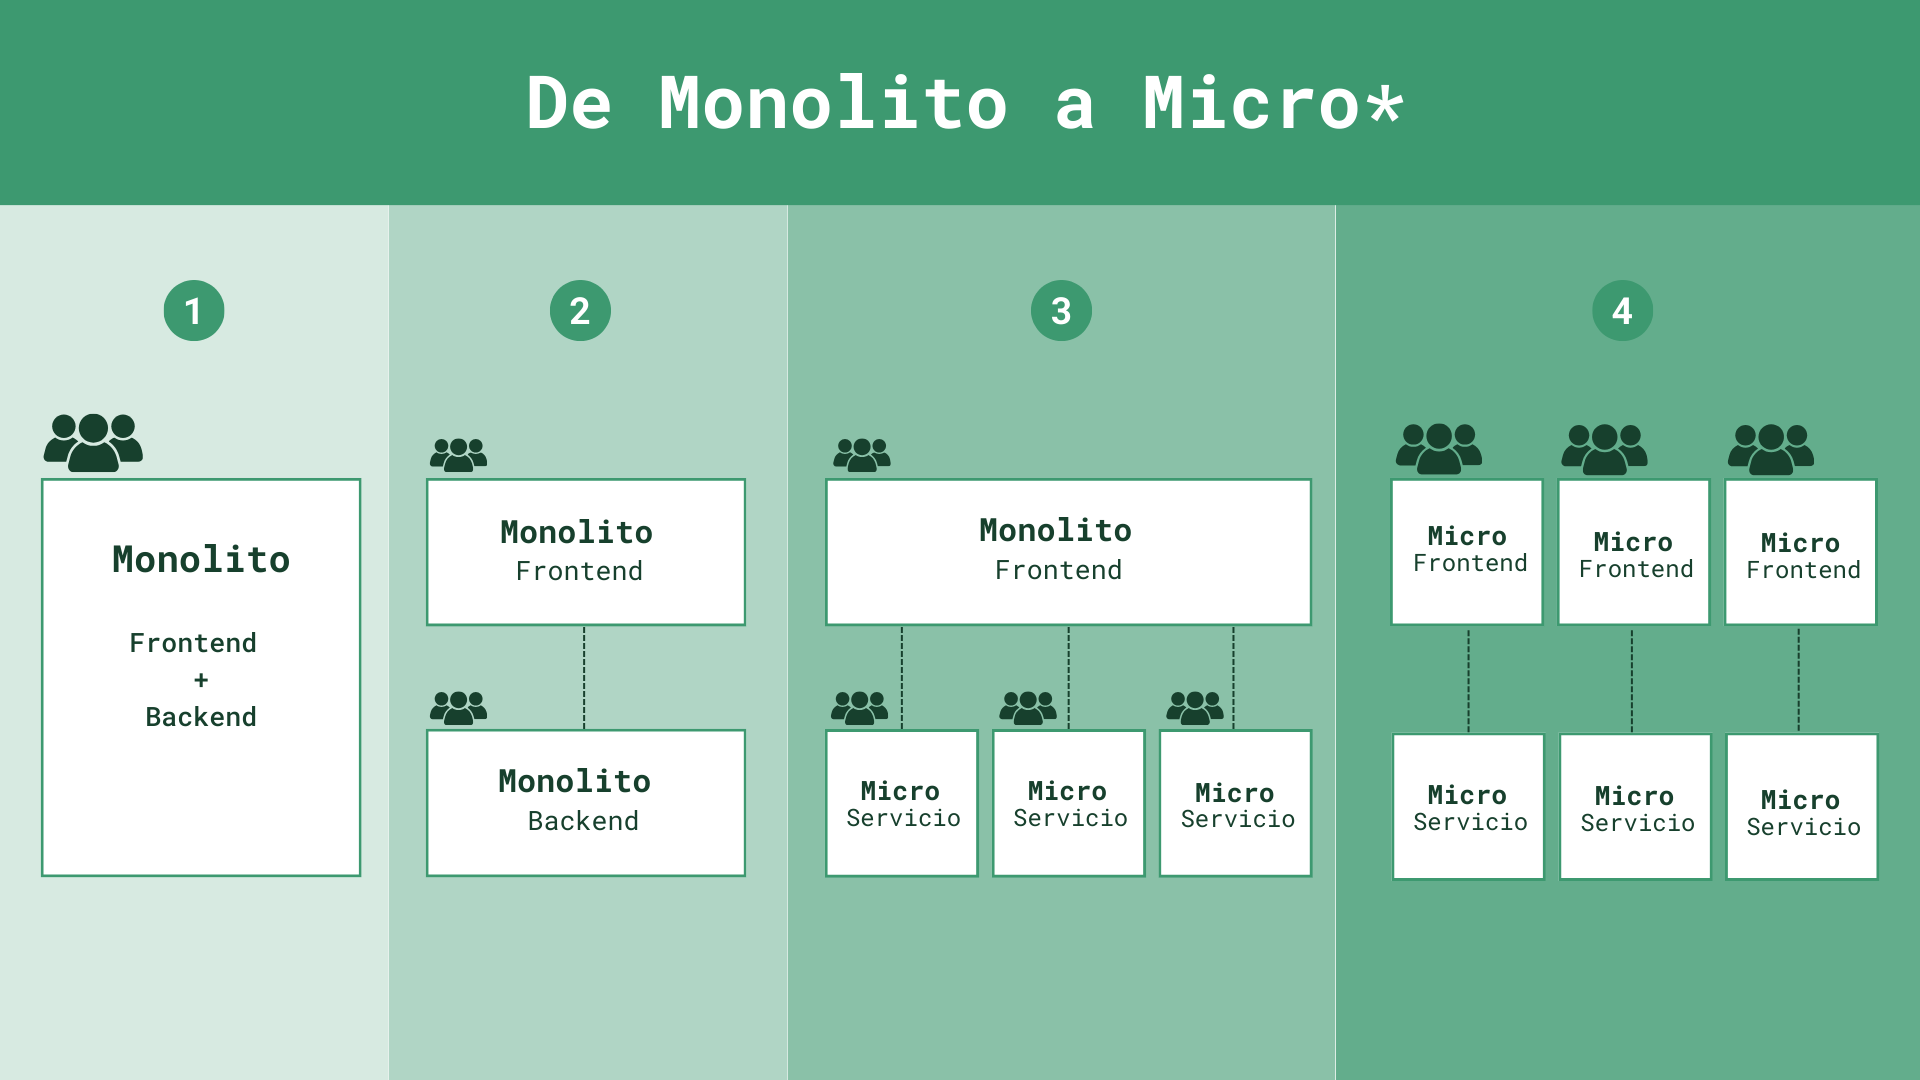 Imagen que muestra diferentes tipos de arquitectura: Monolito, Monolito de front y Monolito de back, Monolito de front y micro servicios en back, Micro frontends y Micro servicios 